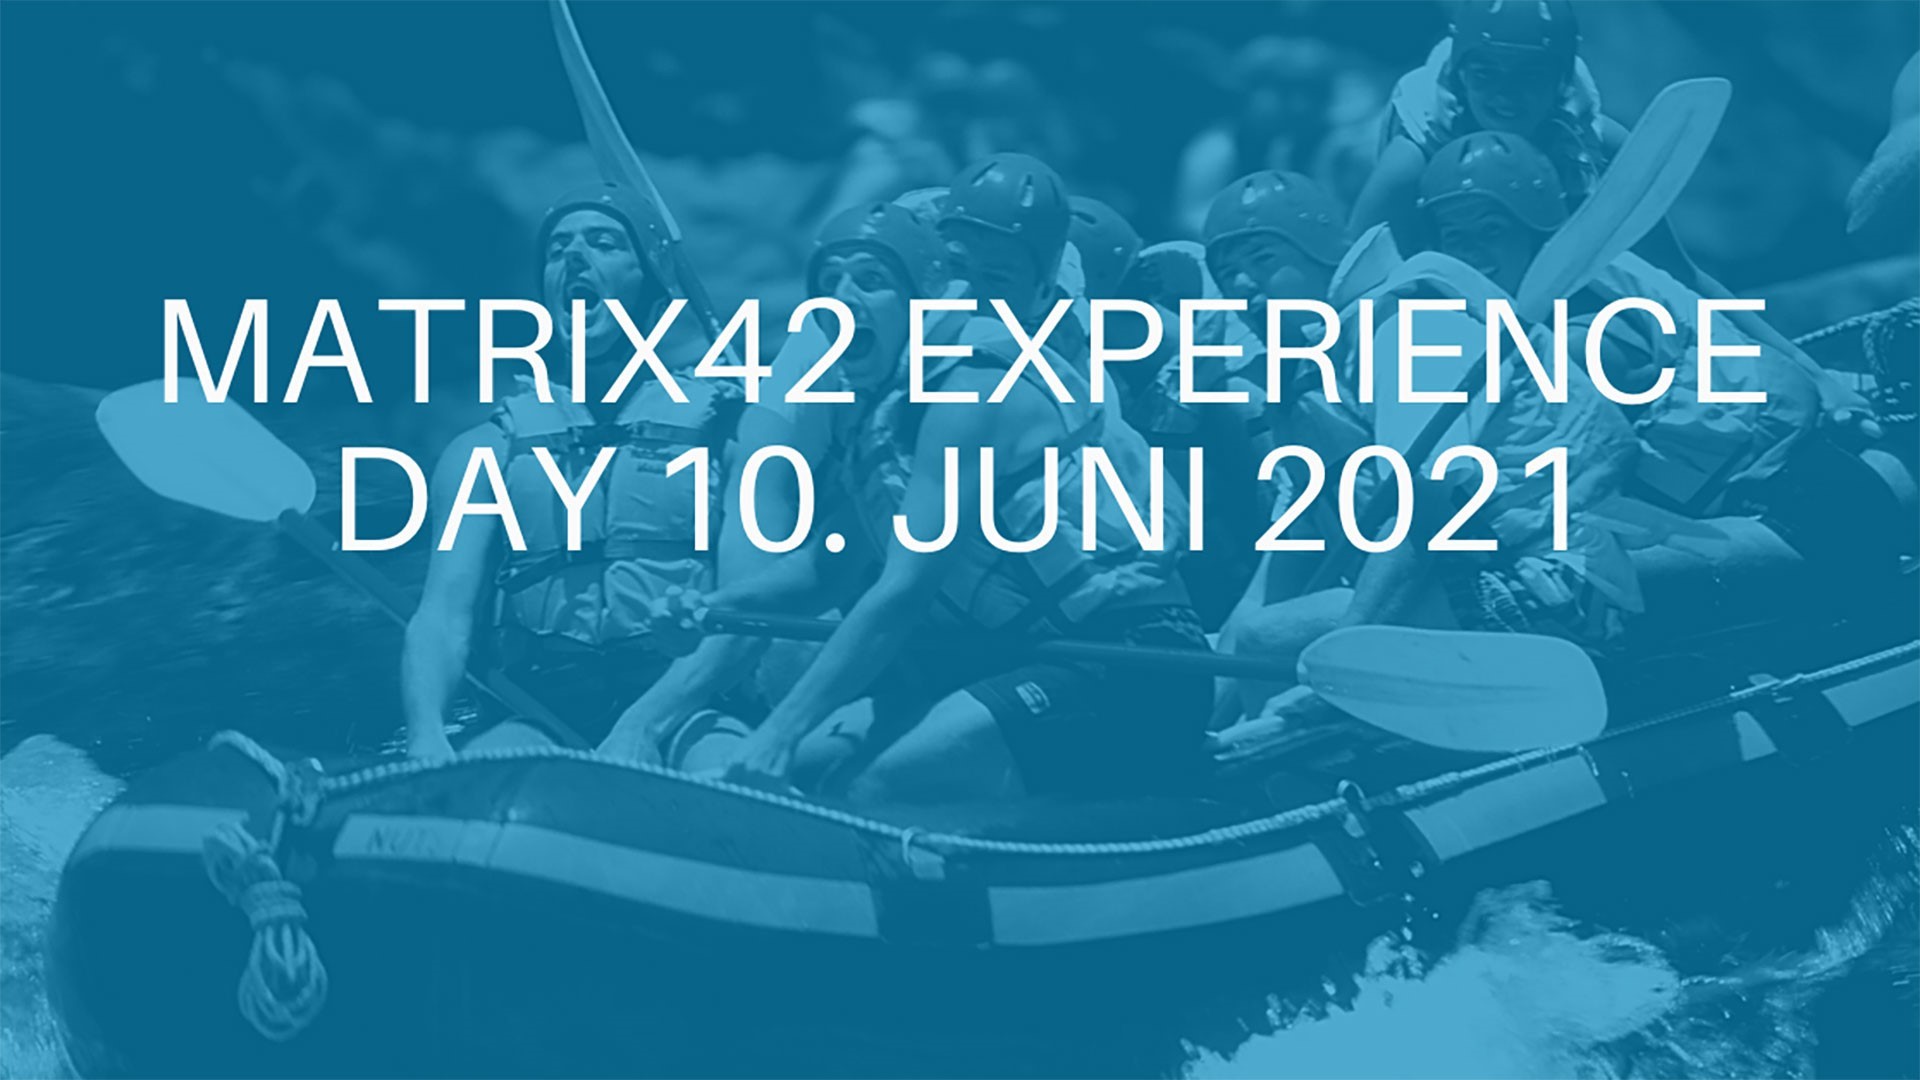 Matrix42 Experience Day 2021 FB